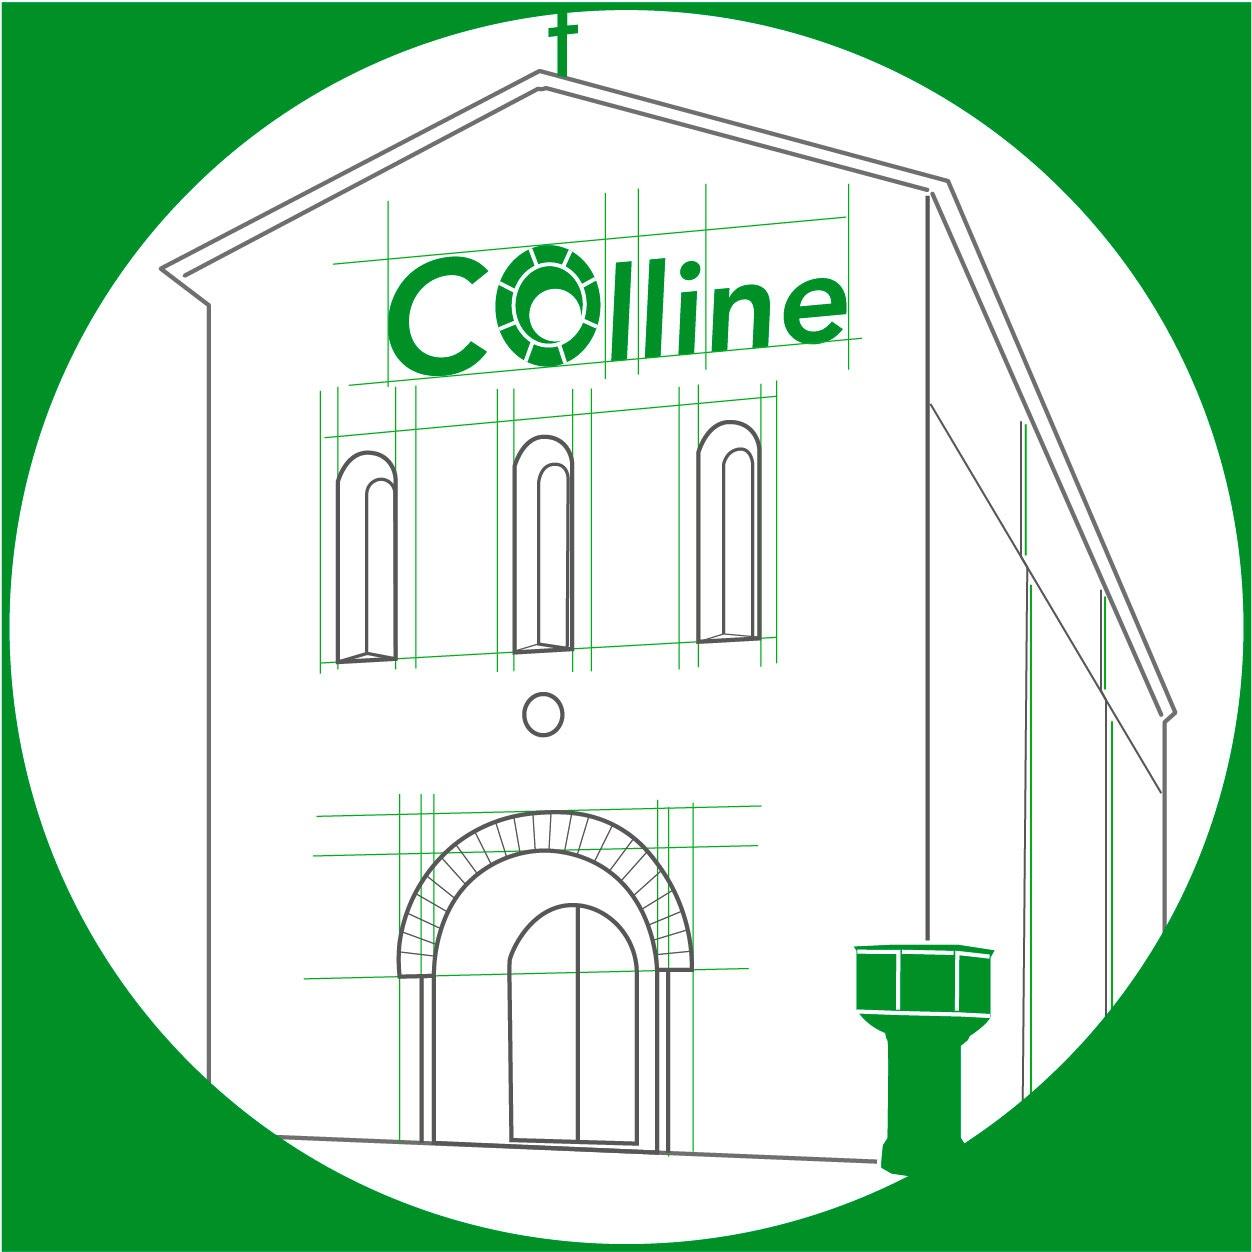 Logo progetto Colline che richiama l’utilizzo di materiali e tecnologie green su uno dei casi studio del progetto: la Basilica di San Francesco alla Rocca di Viterbo.